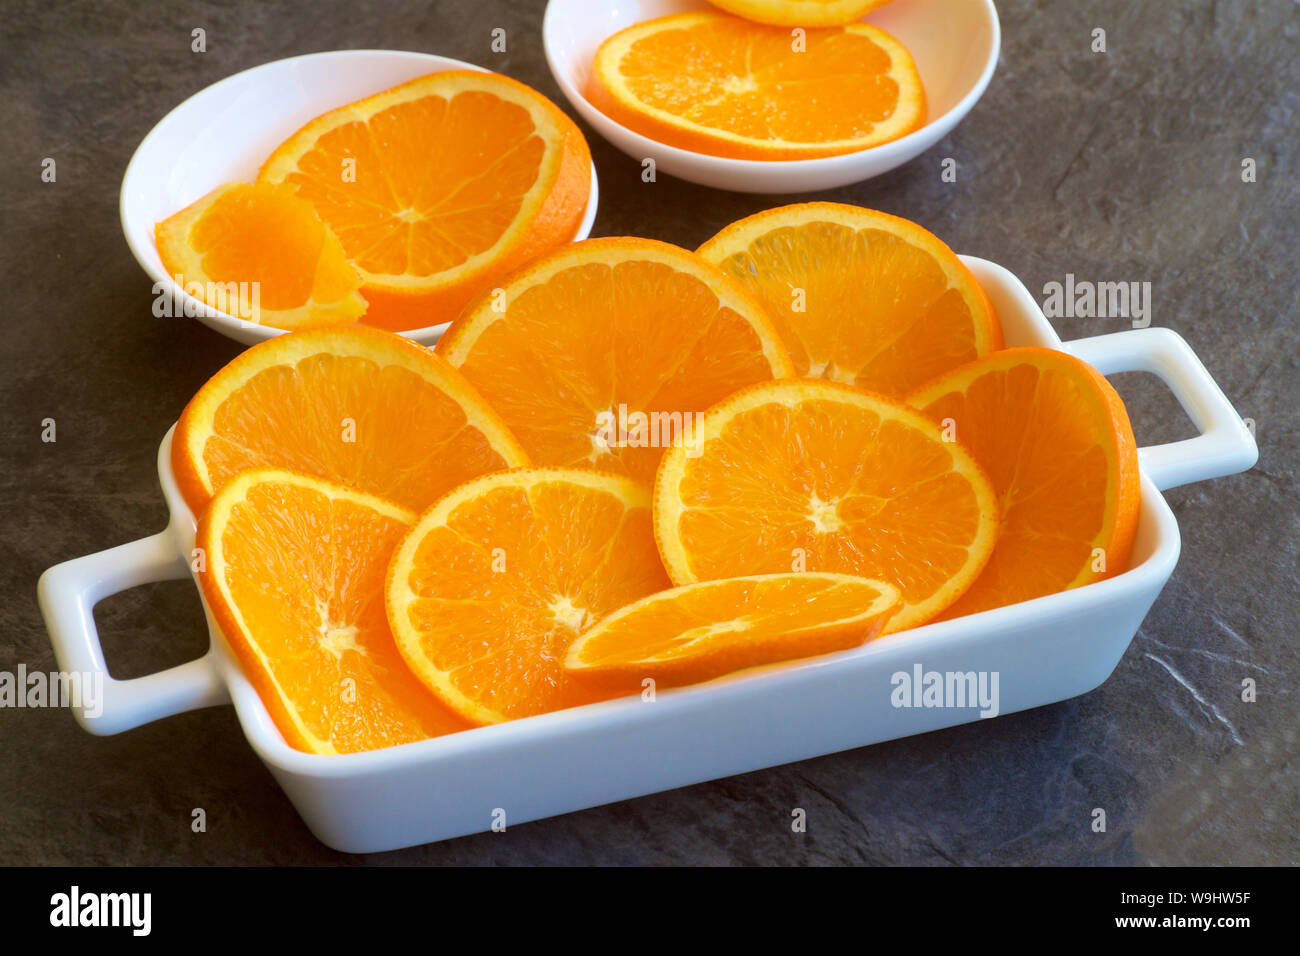 Orange slices on a white dish. Stock Photo